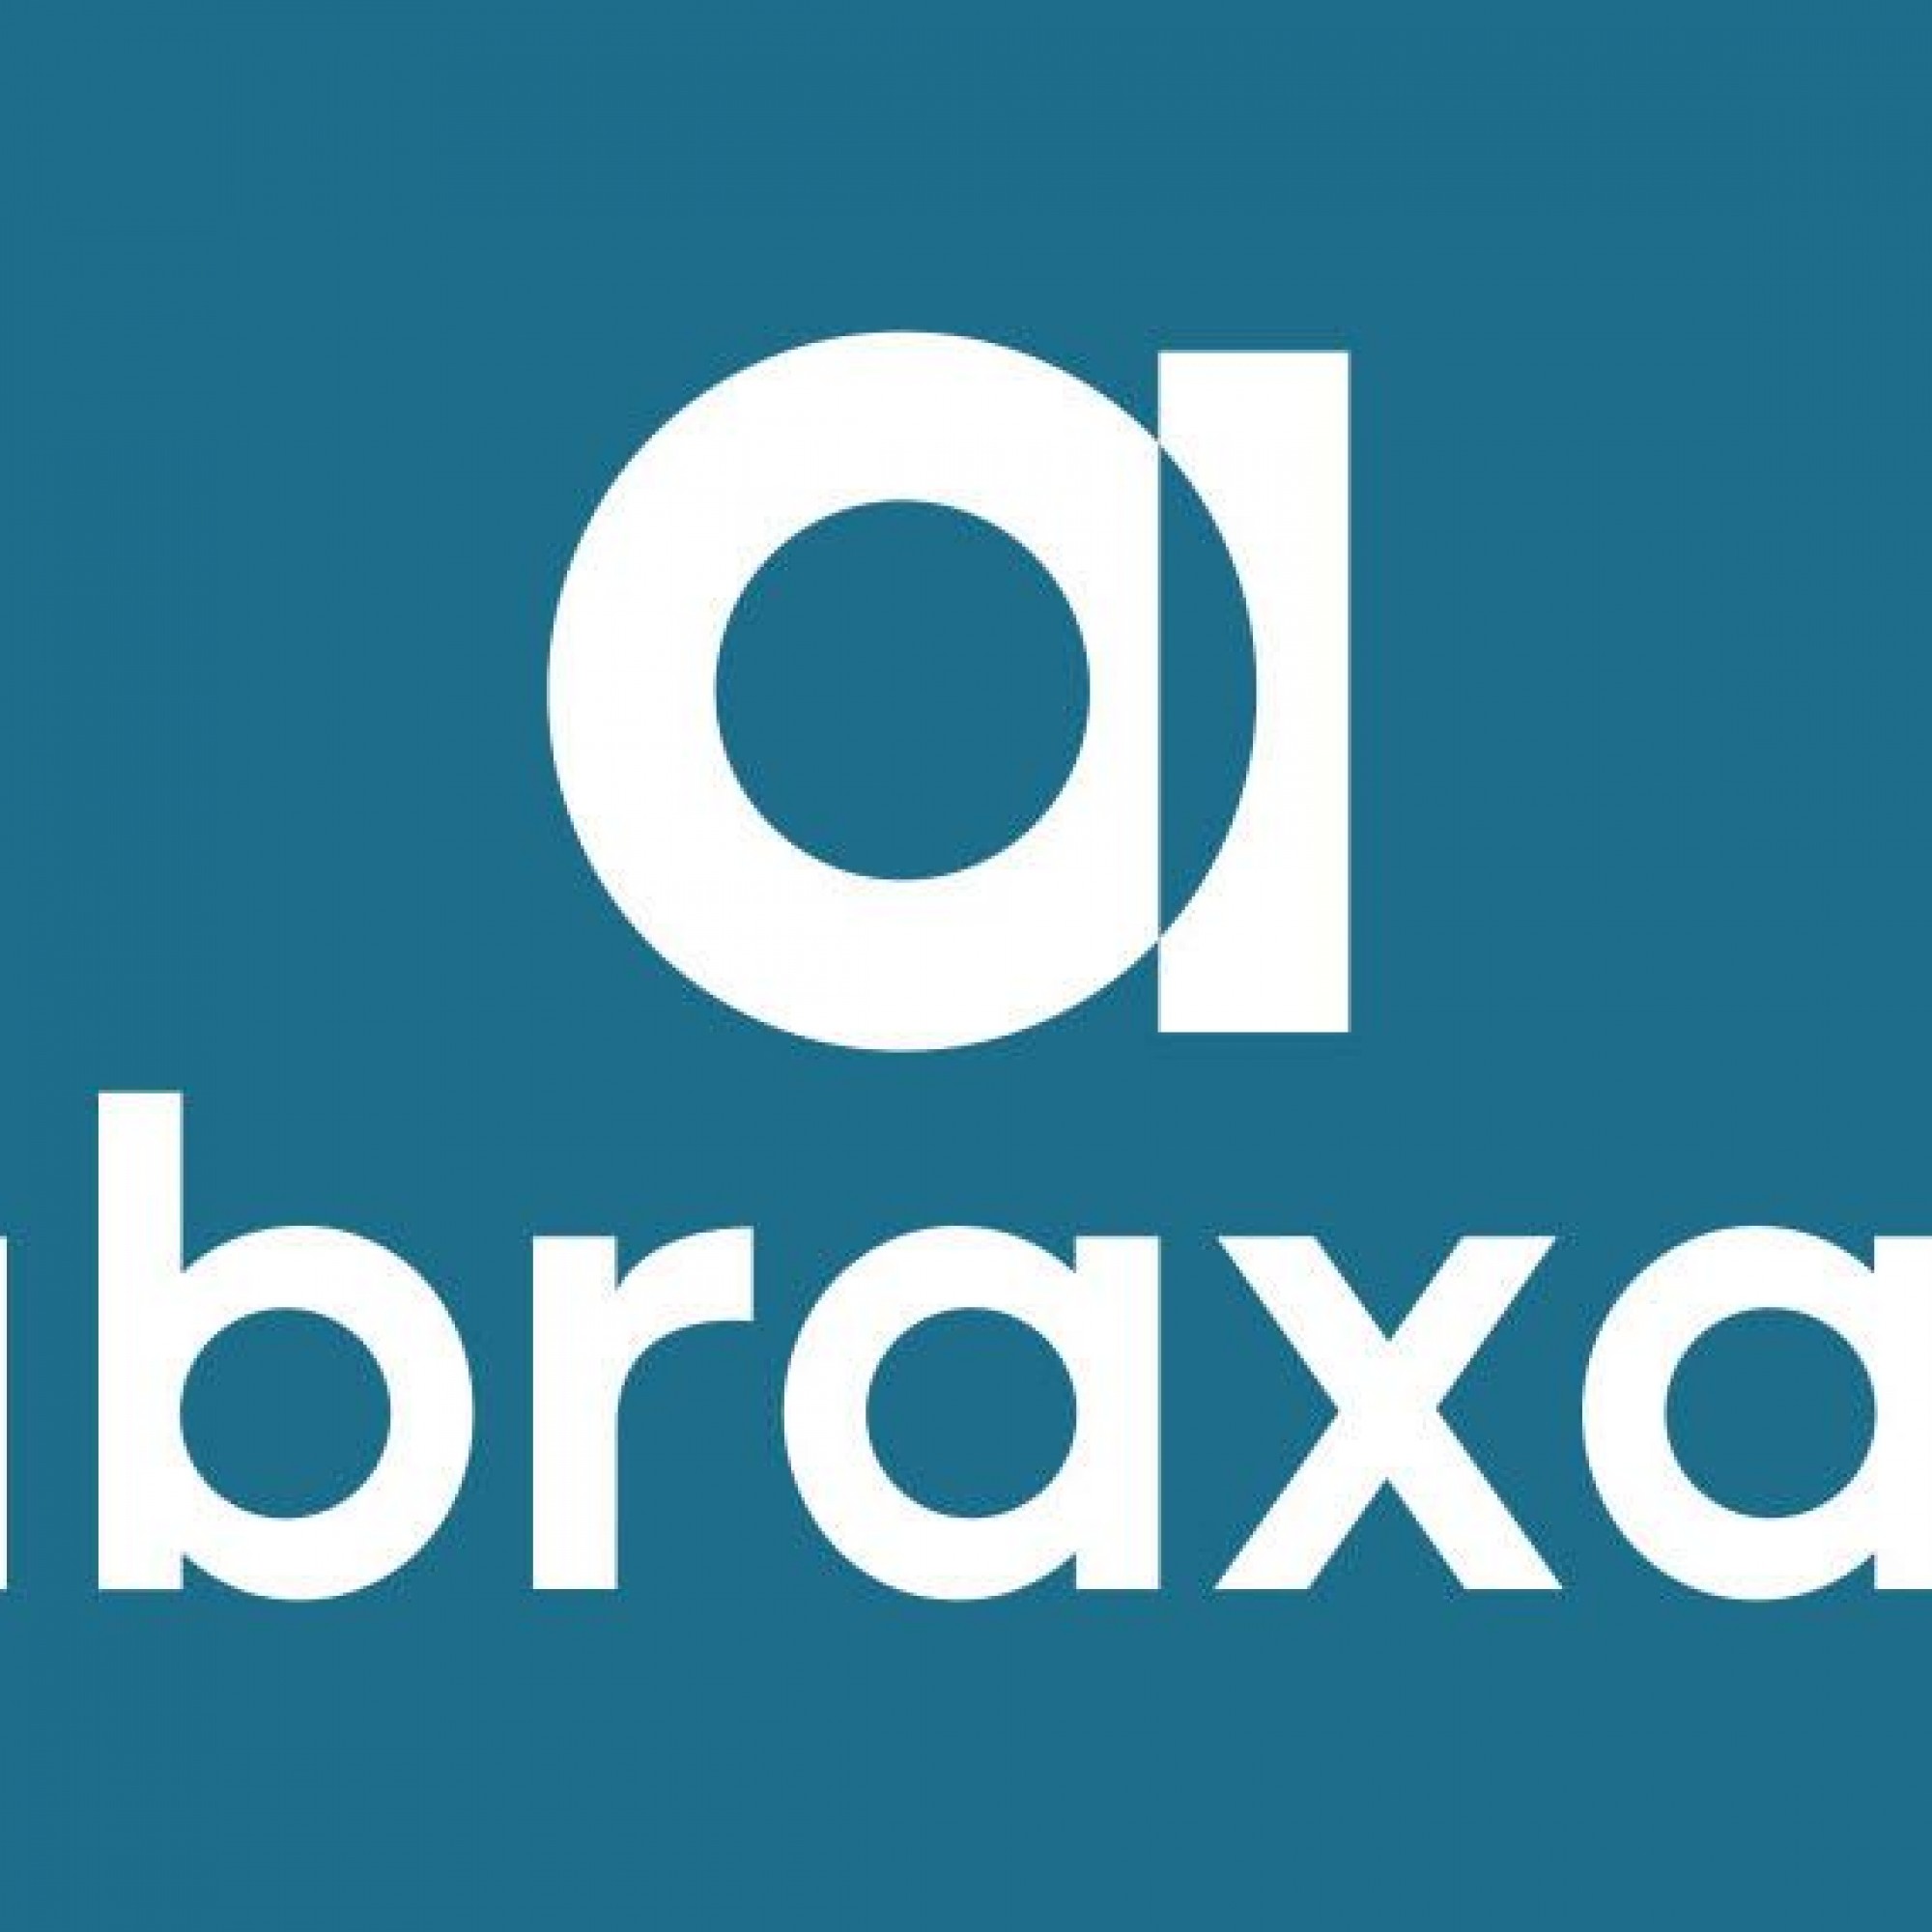 Logo der neuen Abraxas